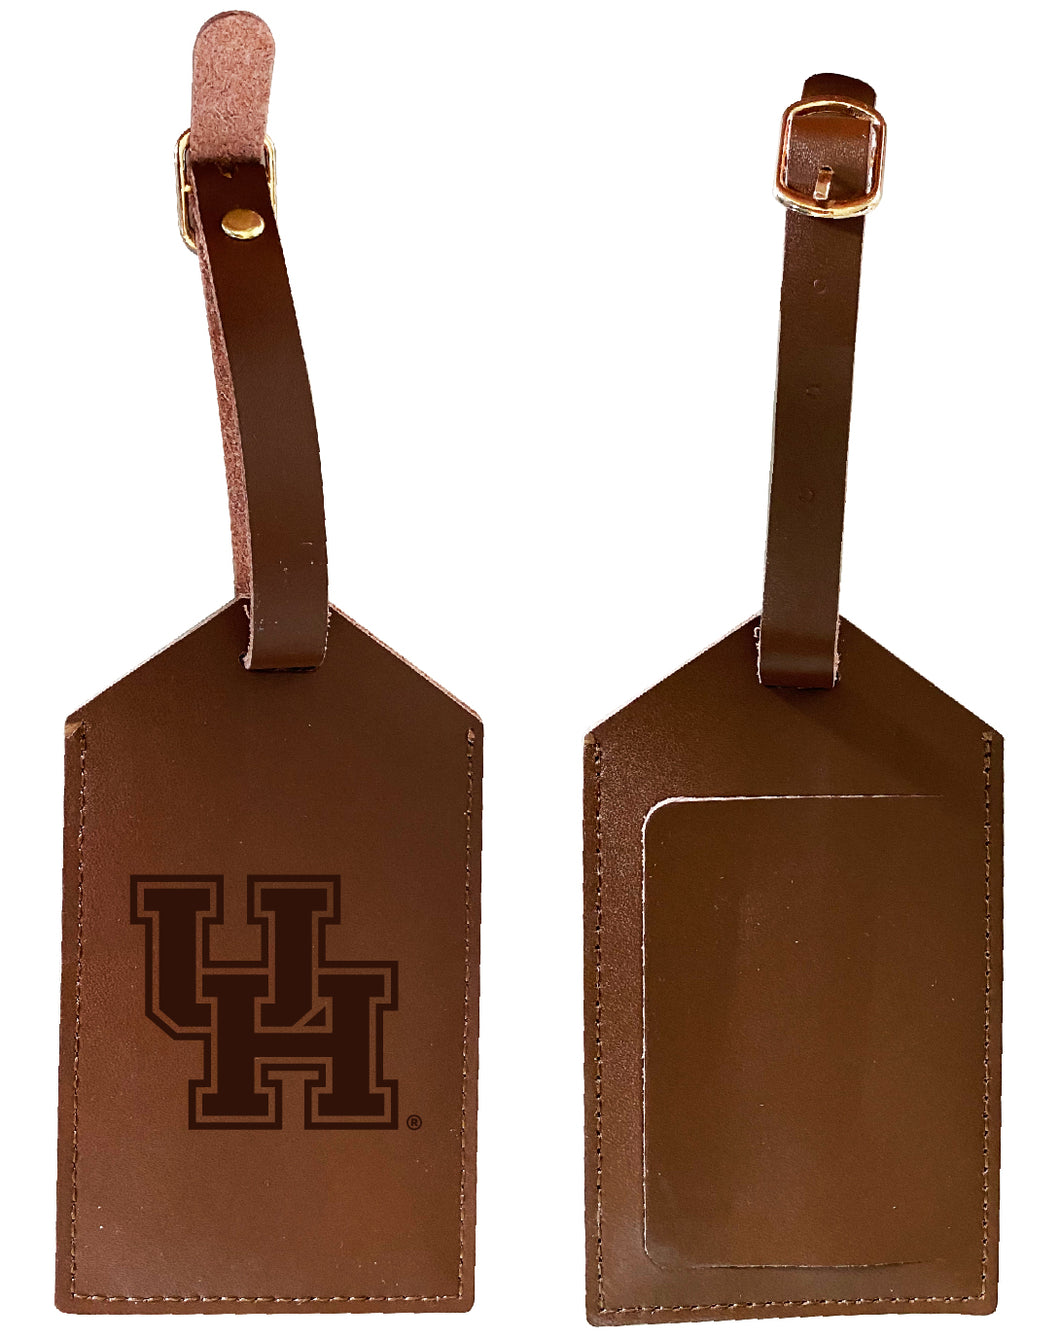 Elegant University of Houston NCAA Leather Luggage Tag with Engraved Logo